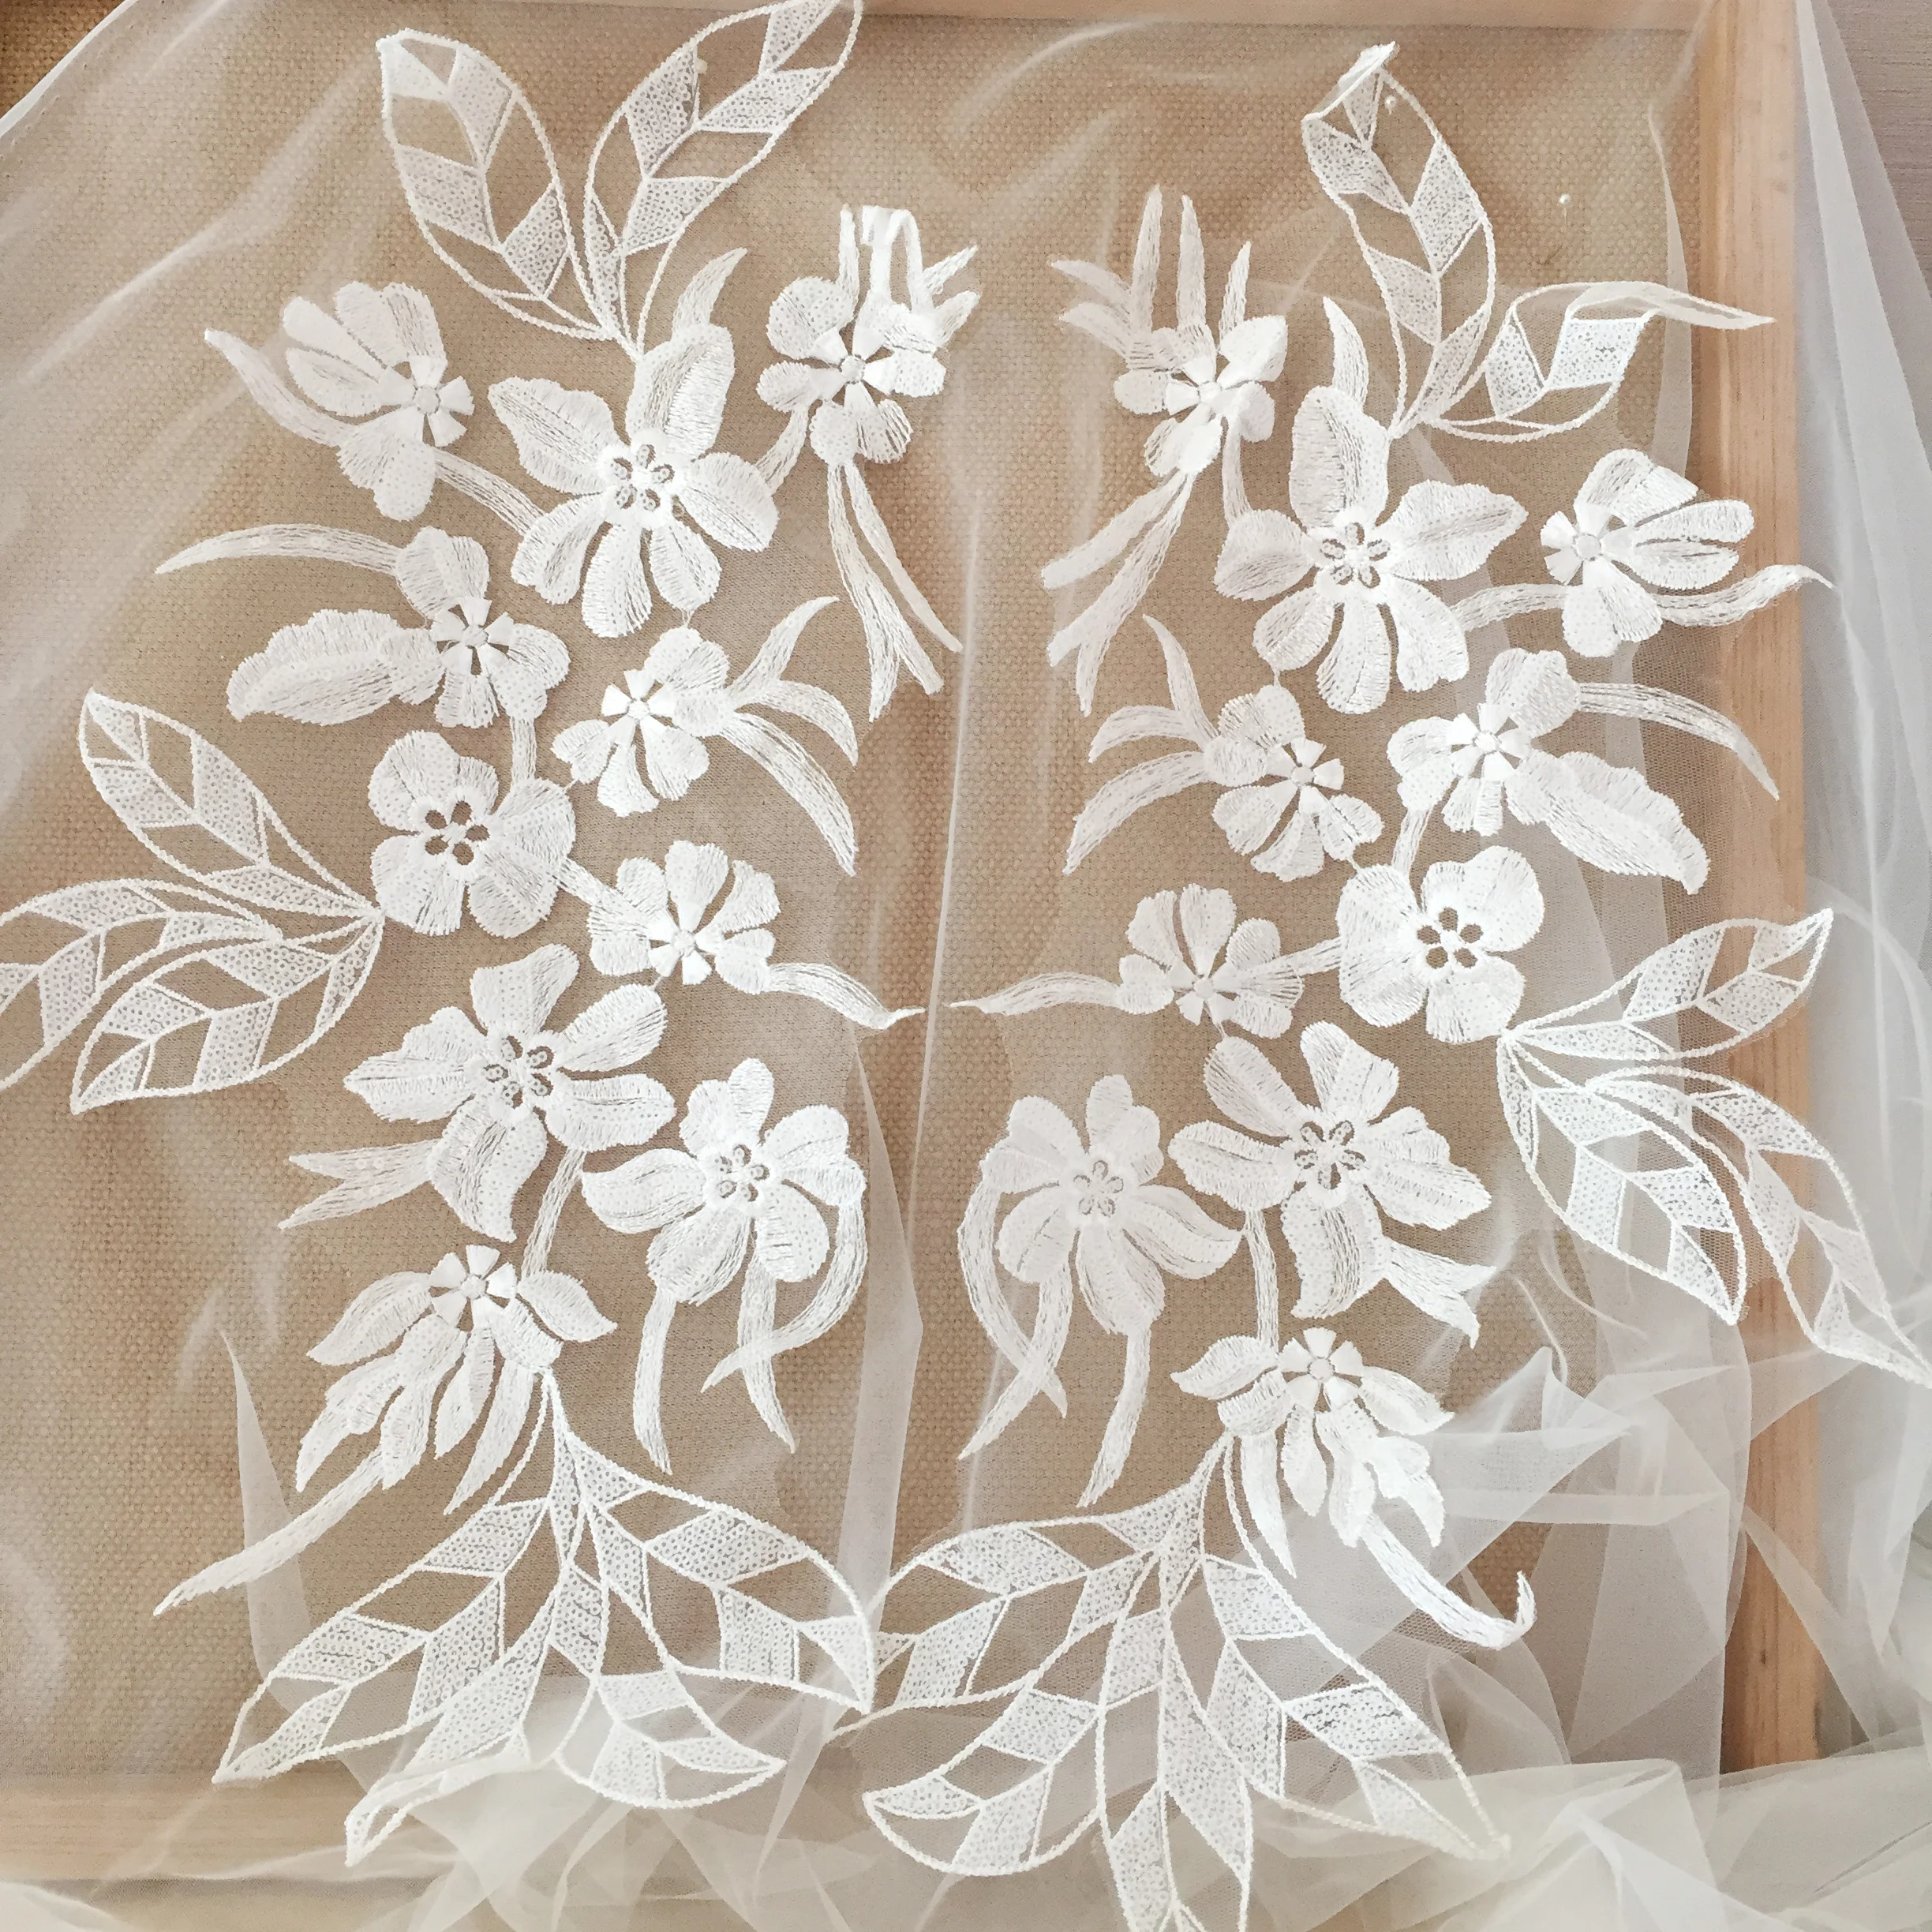 

1 Pair 2 pieces Large Ivory Sequin Lace Applique, Leaf Bridal Veil Wedding Floral Embroidery Lace Patch Motif